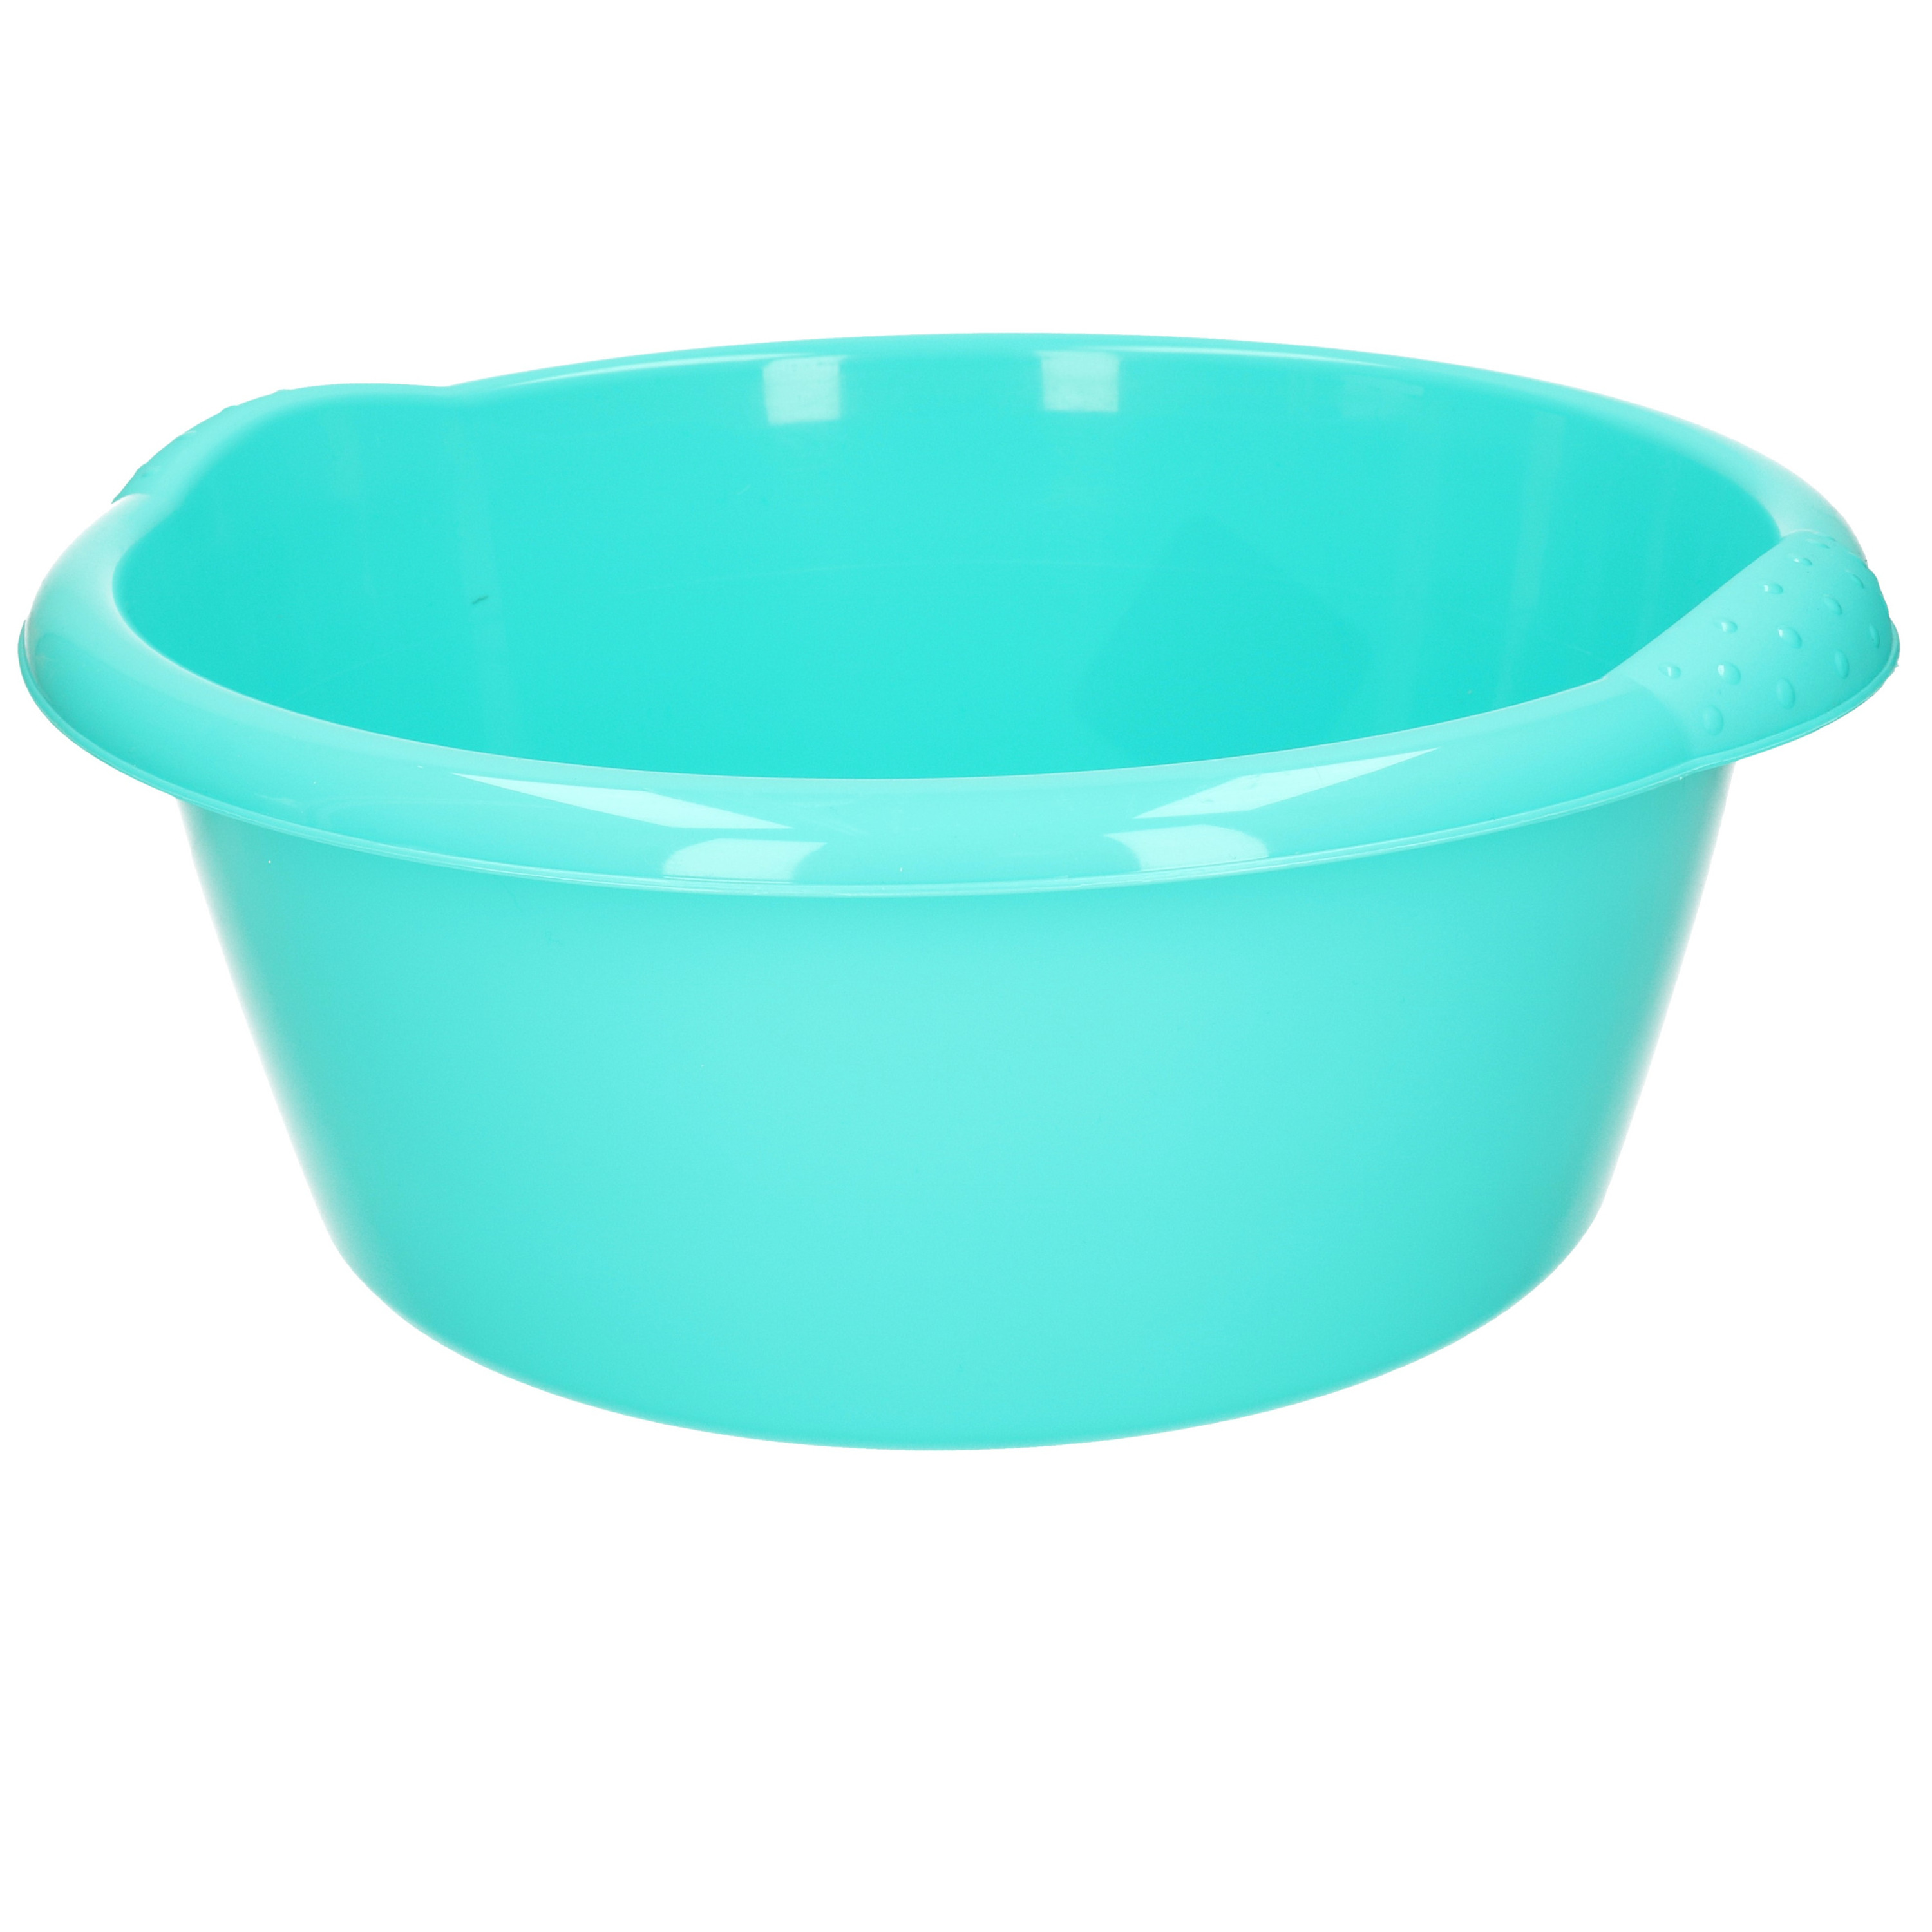 Ronde afwasteil-afwasbak turquoise blauw 10 liter 38 x 16 cm